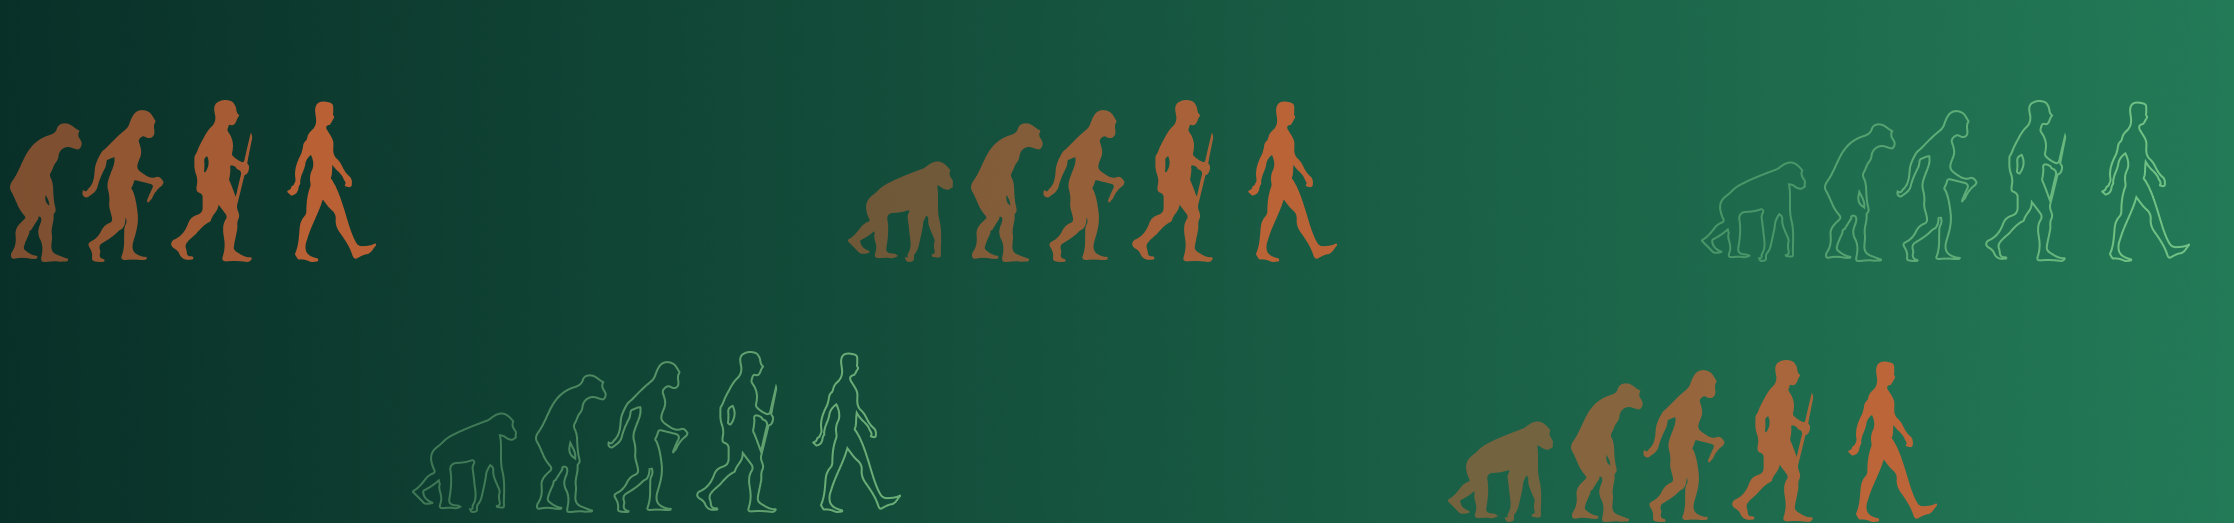 Evolución de la especie humana